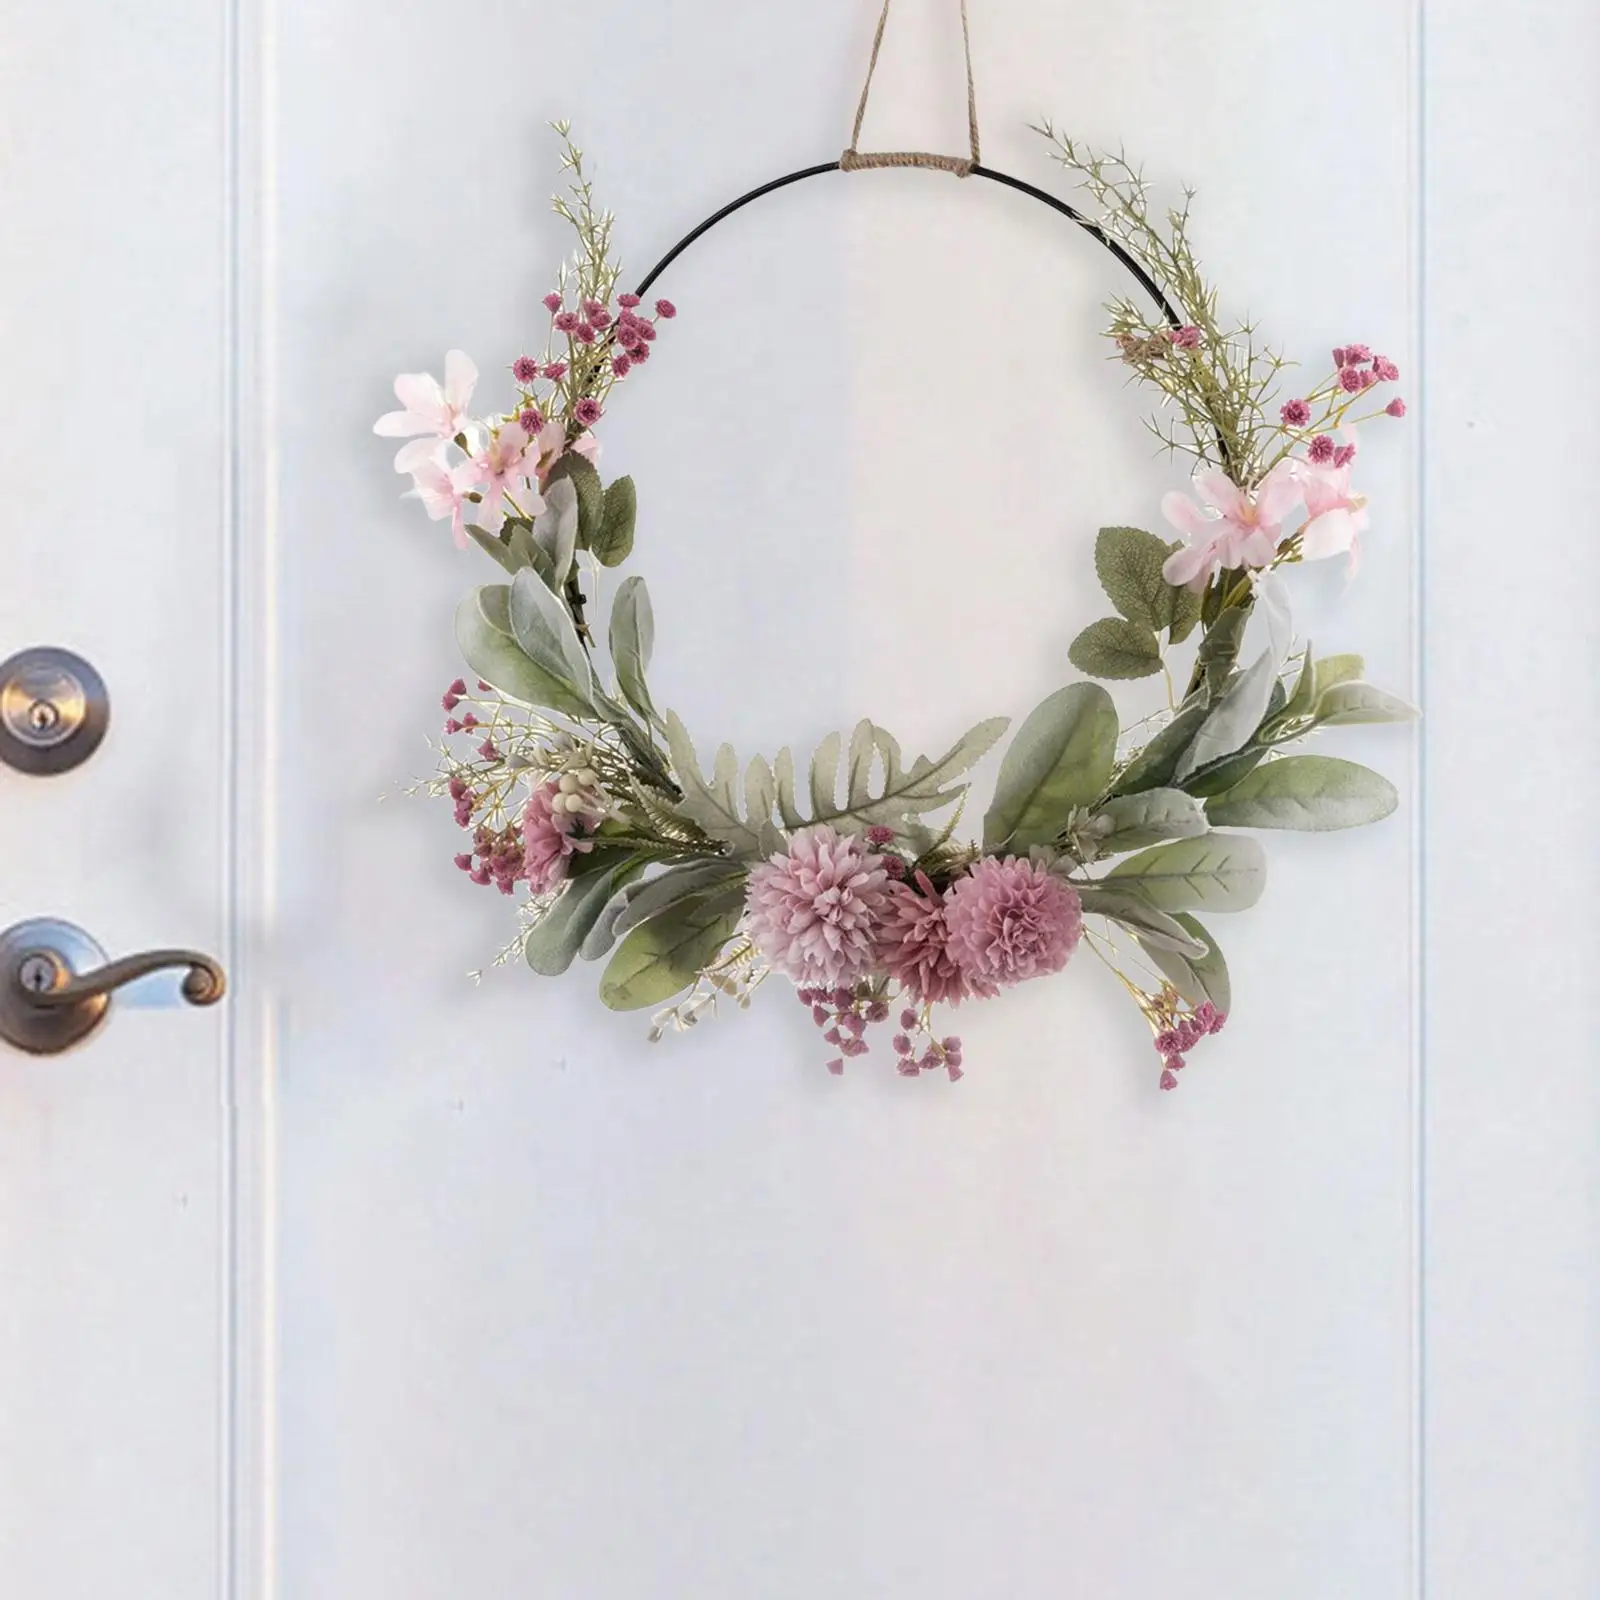 Hanging Door Wreath Handcrafted Photography Props Garlands Ornament Centerpieces Garland for Front Door Home Yard Decor Wedding